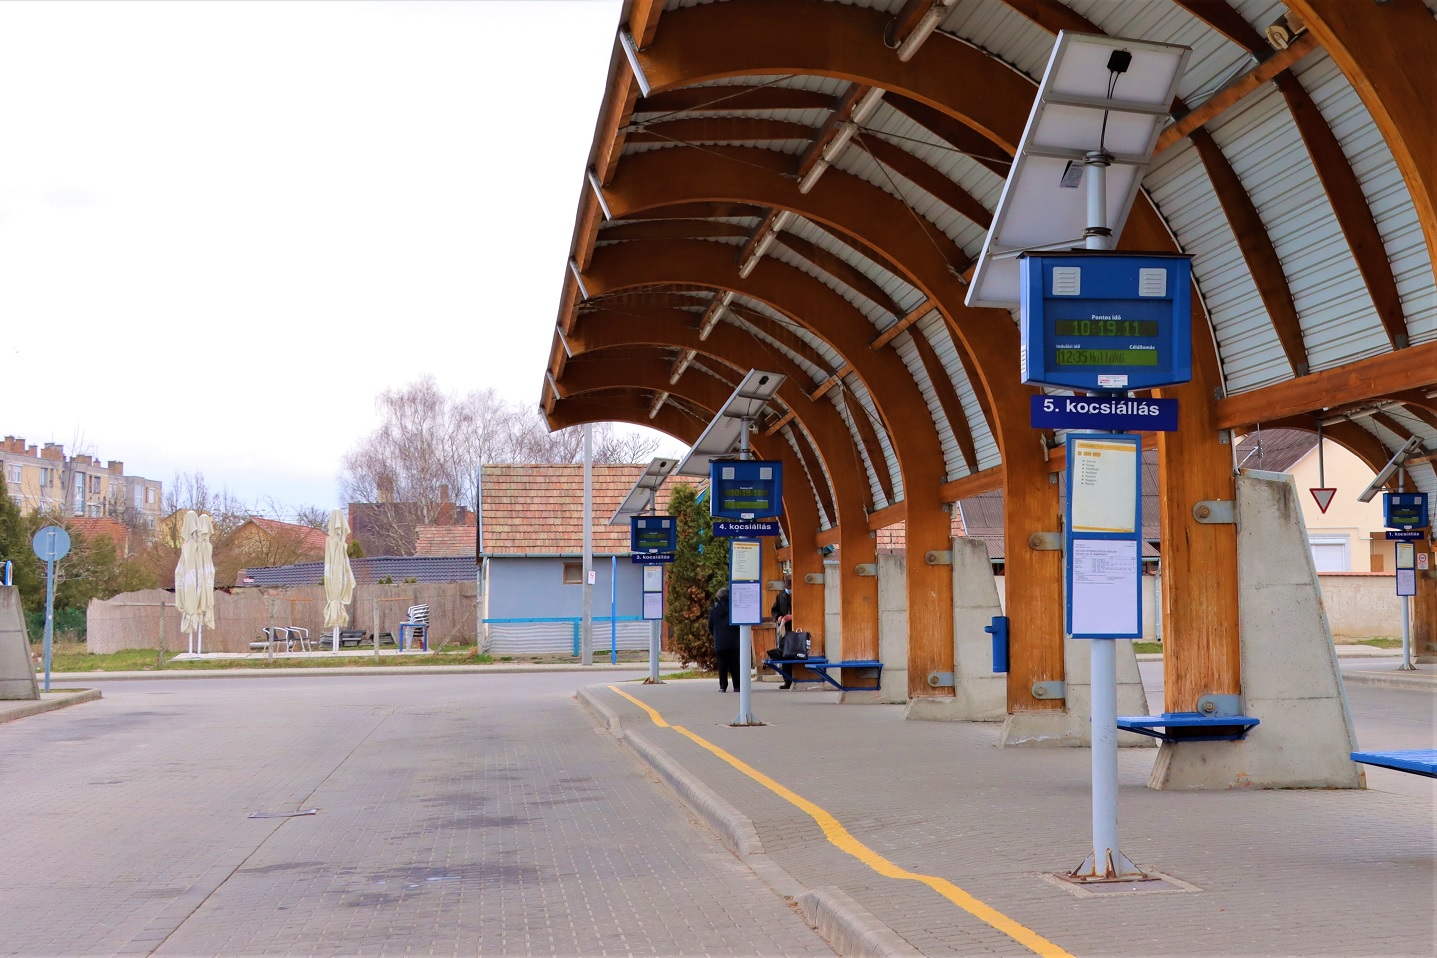 A képen Szécsény autóbusz-állomás kocsiállásai láthatóak. A kocsiállásokat íves faszerkezet védi az esőtől és naptól, illetve napelemes utastájékoztató rendszerek kerültek kiépítésre, amiket a kép mutat.